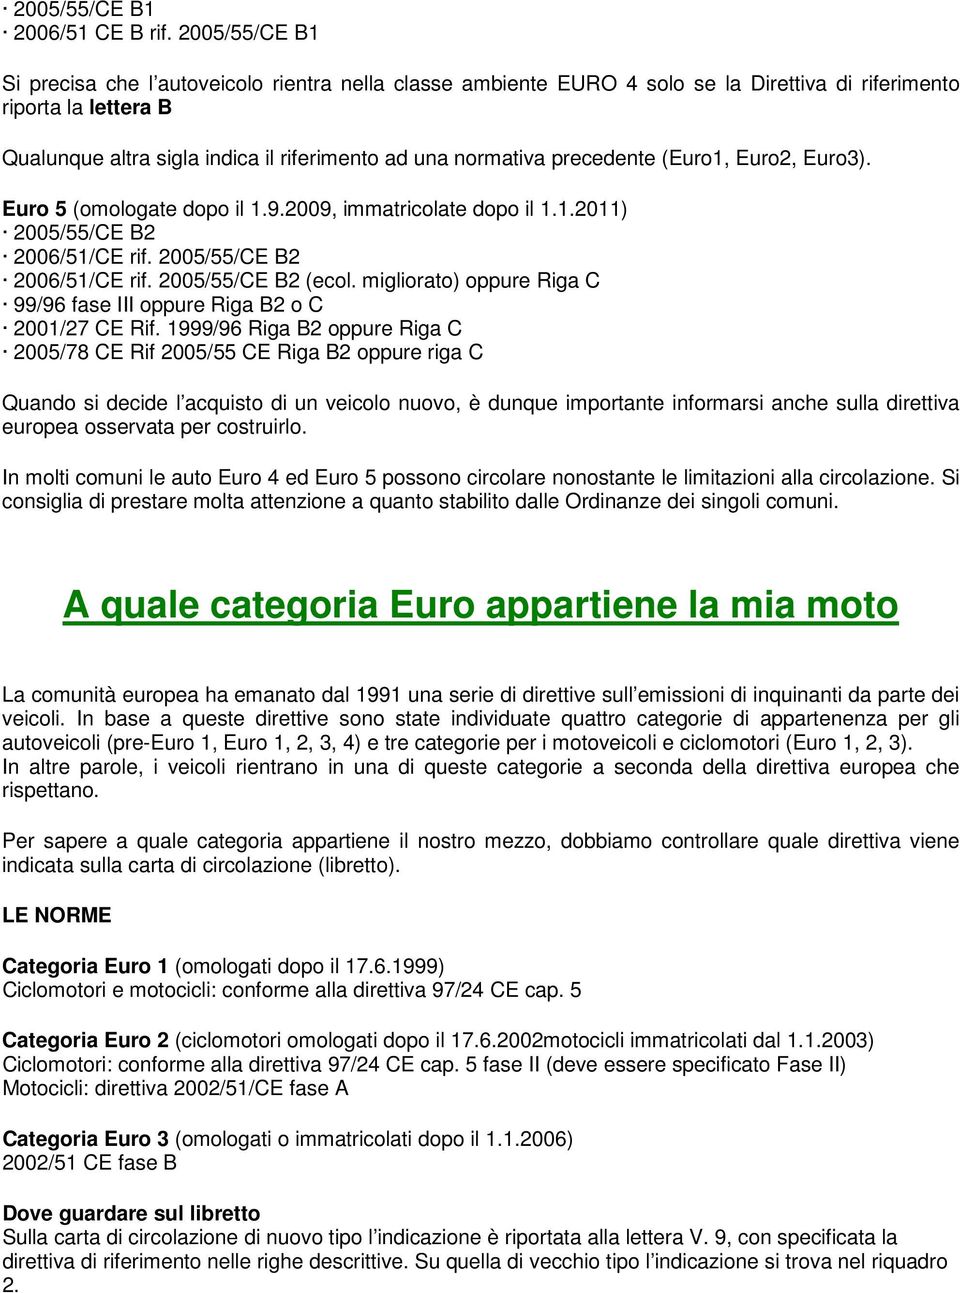 precedente (Euro1, Euro2, Euro3). Euro 5 (omologate dopo il 1.9.2009, immatricolate dopo il 1.1.2011) 2005/55/CE B2 2006/51/CE rif. 2005/55/CE B2 2006/51/CE rif. 2005/55/CE B2 (ecol.